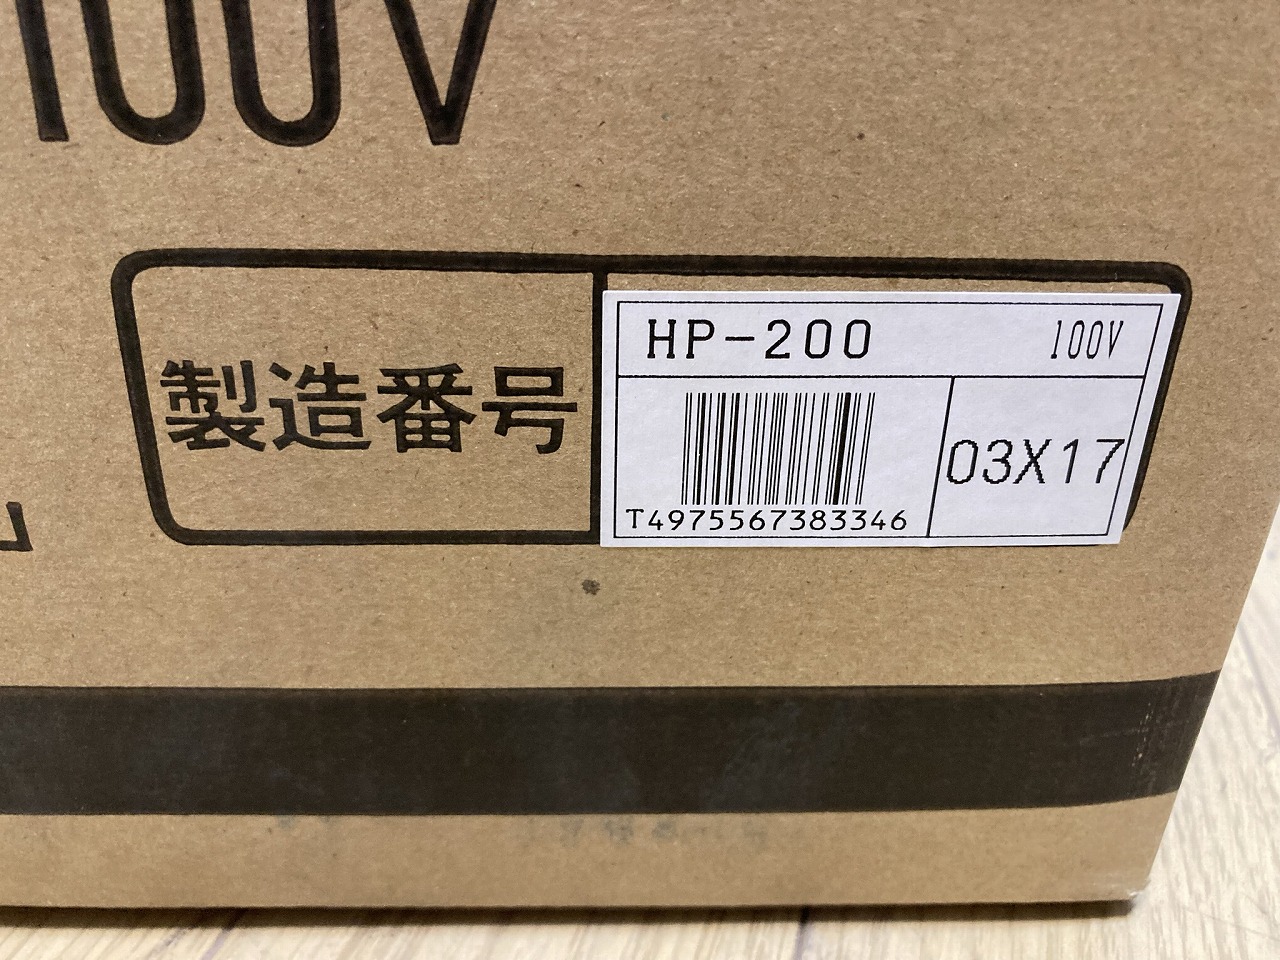 HP-200